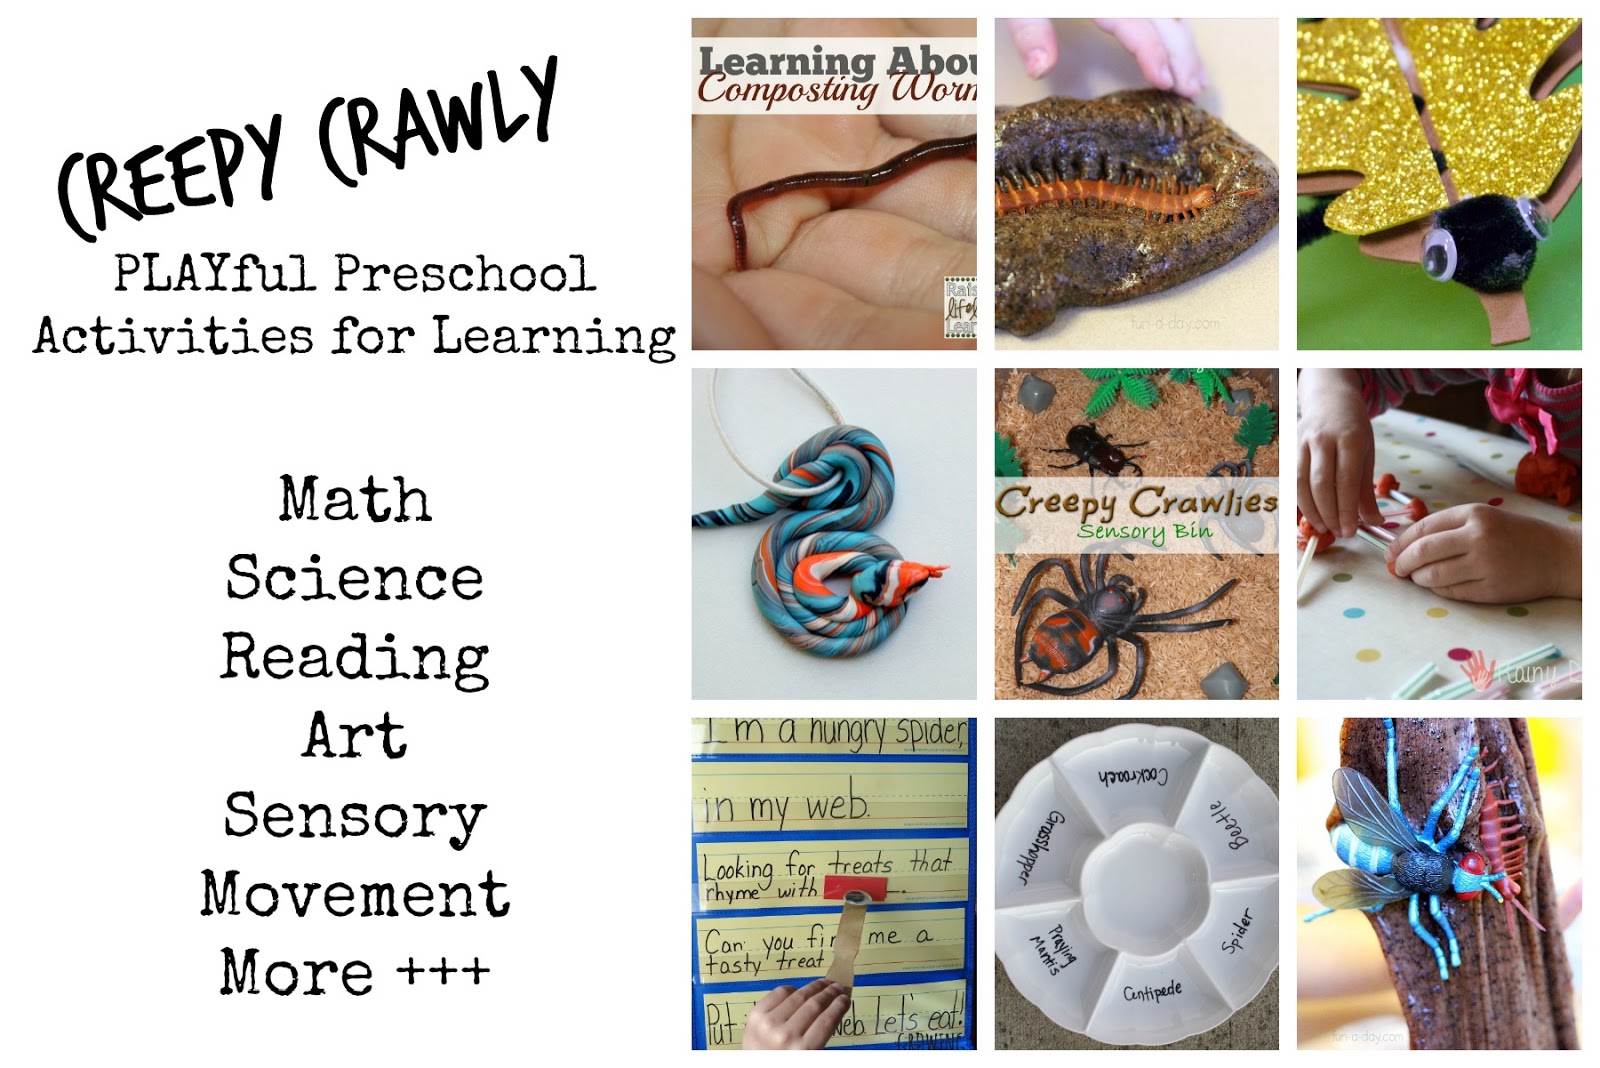 Creepy Crawly Playful Preschool Weekly Lesson Plan